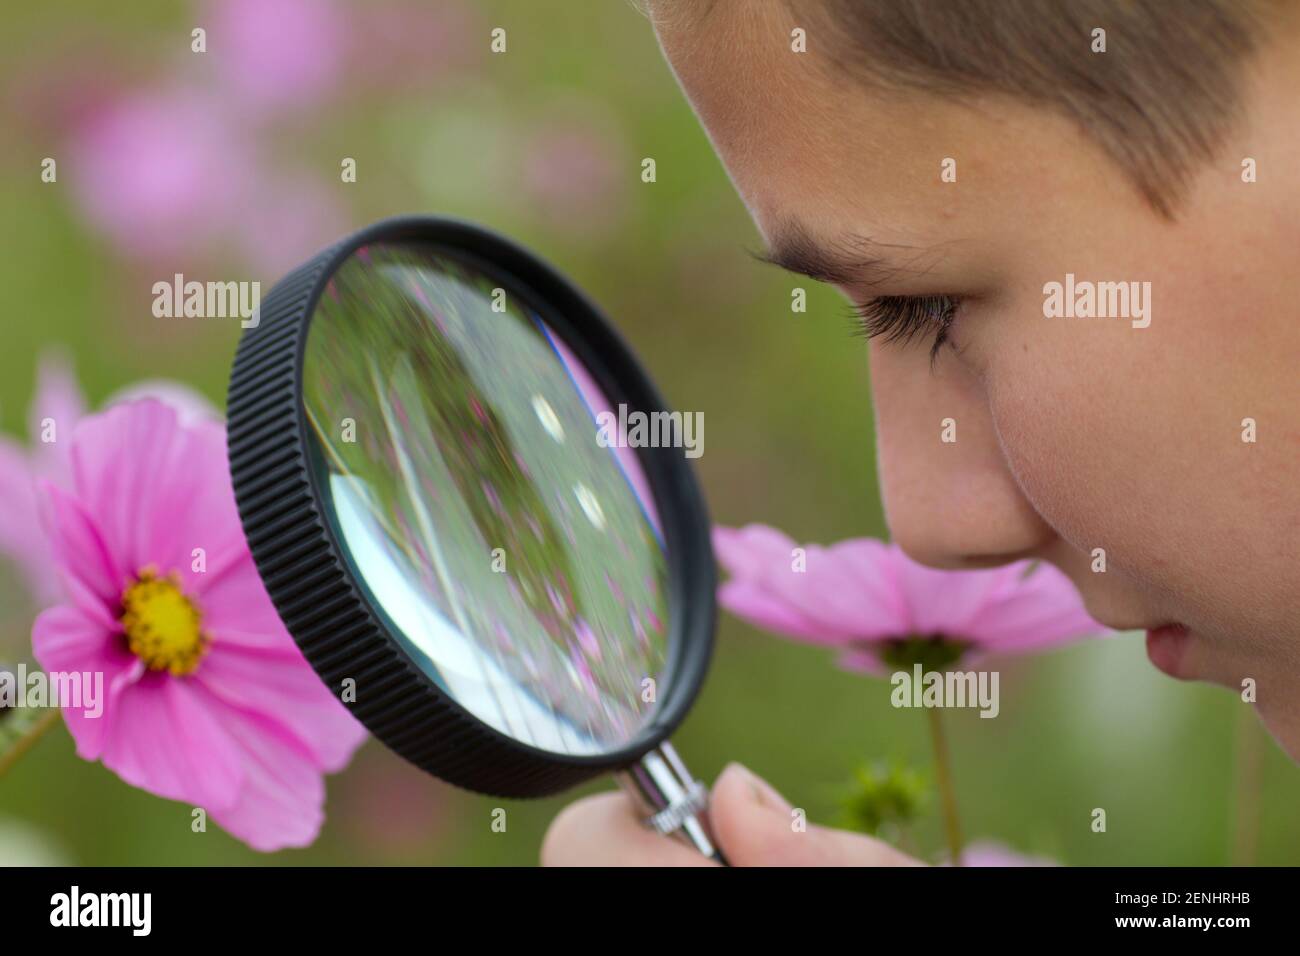 Junge betrachtet Blume durch eine Lupe, MR: Sì Foto Stock